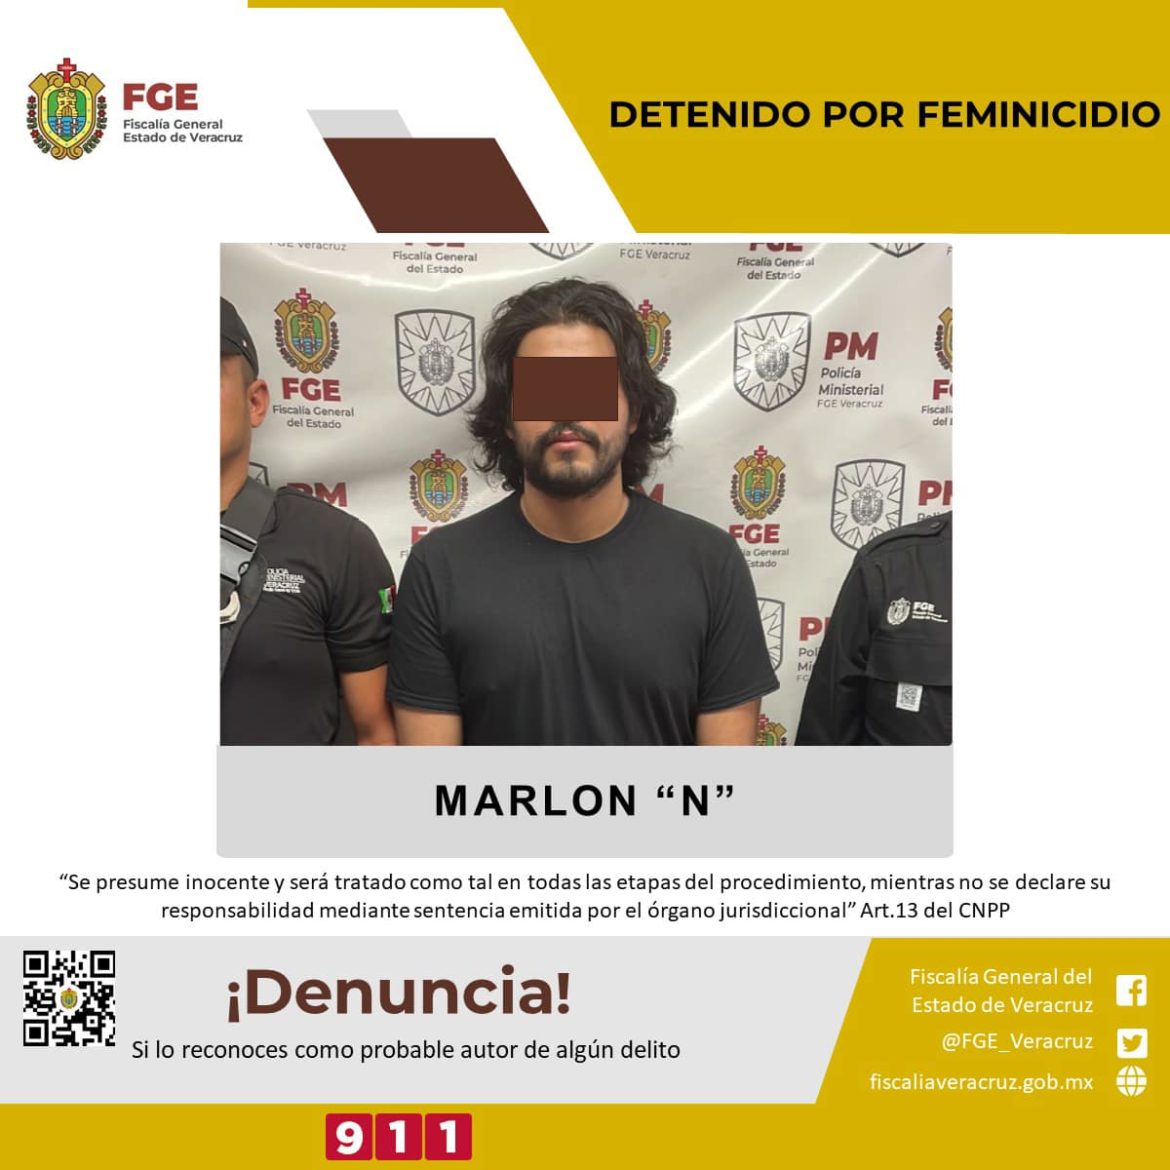 Marlon “N” es imputado por presunto feminicidio, le imponen prisión preventiva oficiosa